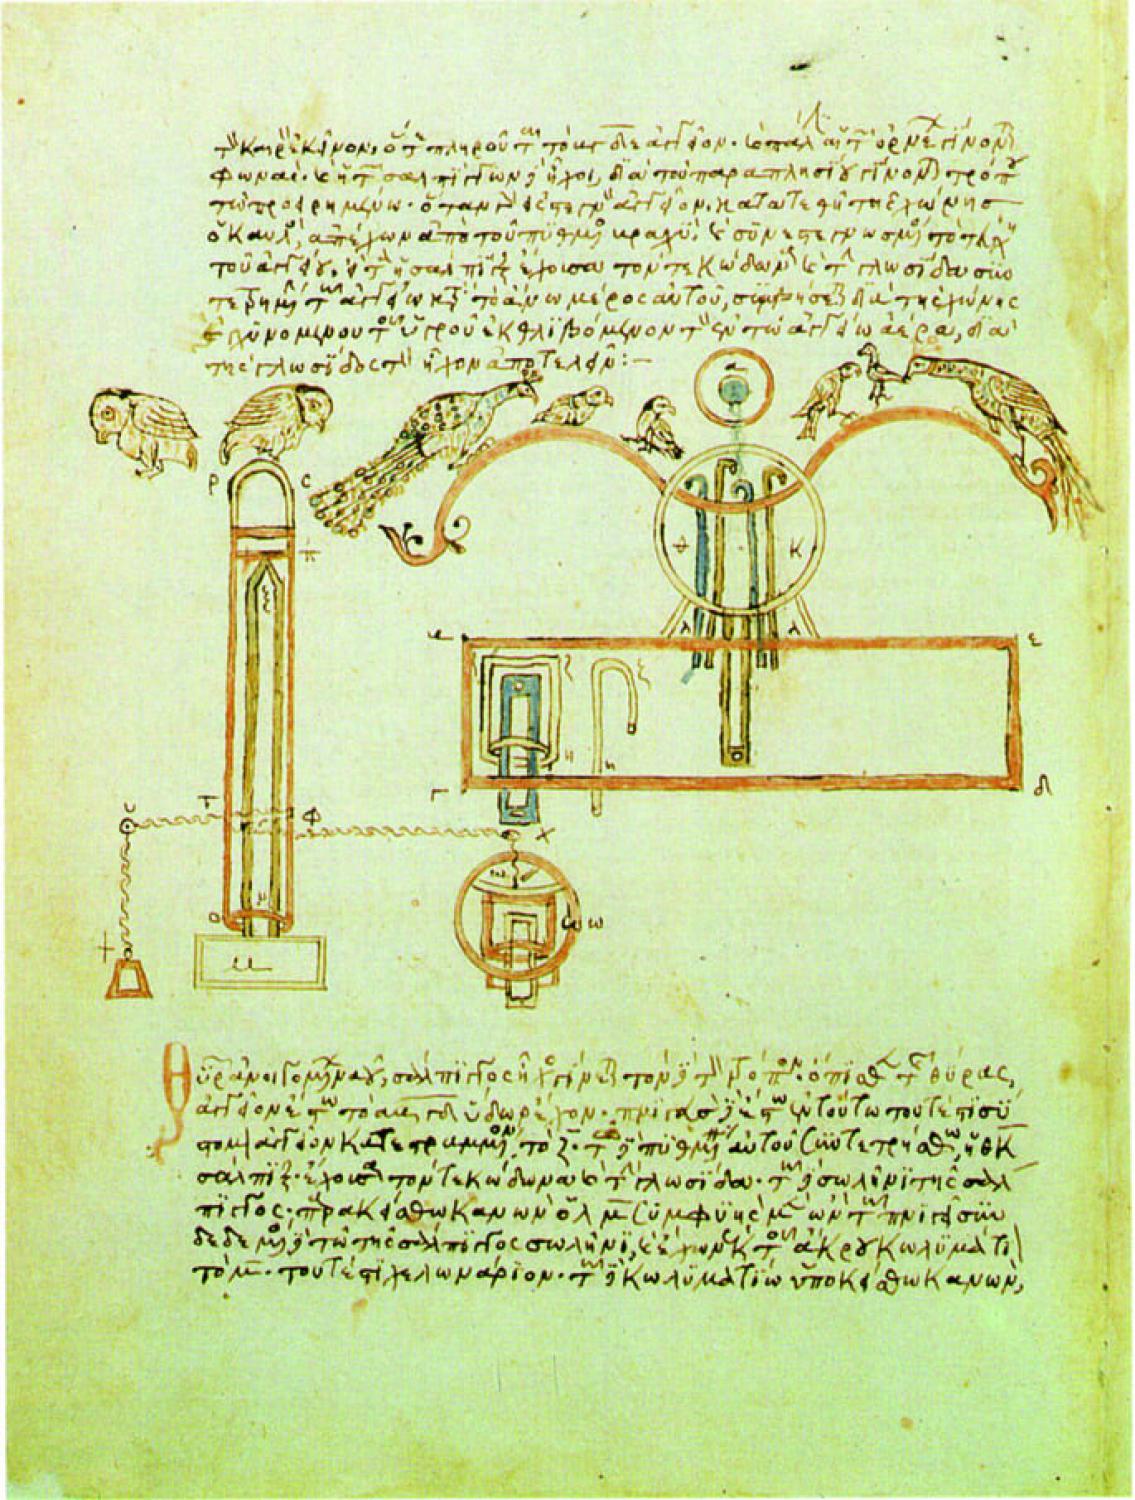 L’apparato progettato da Erone con uccelli meccanici cinguettanti in un manoscritto del XIV secolo di una delle sue opere. Venezia, Biblioteca Marciana.